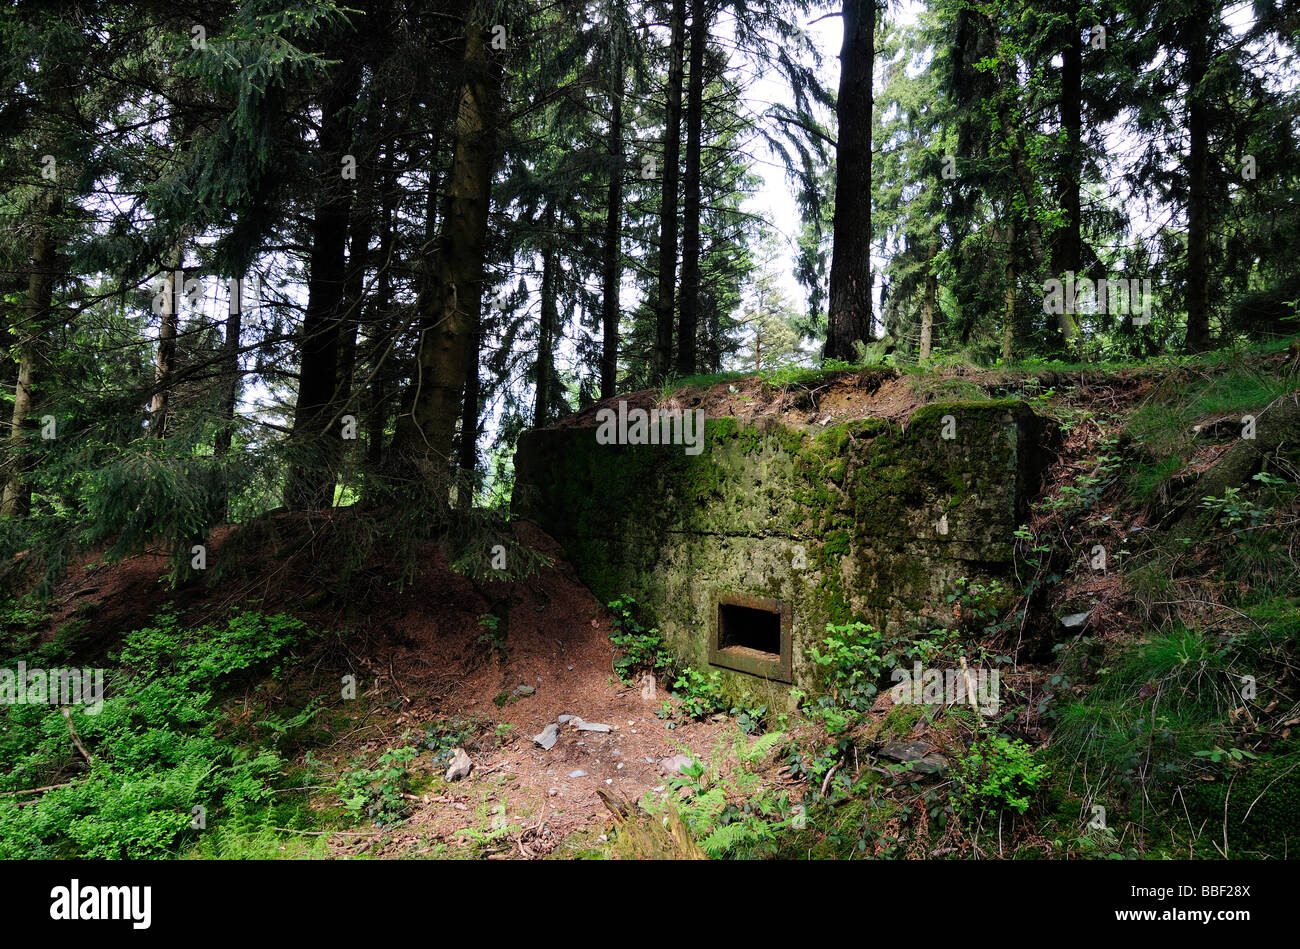 La ligne Siegfried bunker allemand en Allemagne, forêt Huertgenwald Banque D'Images